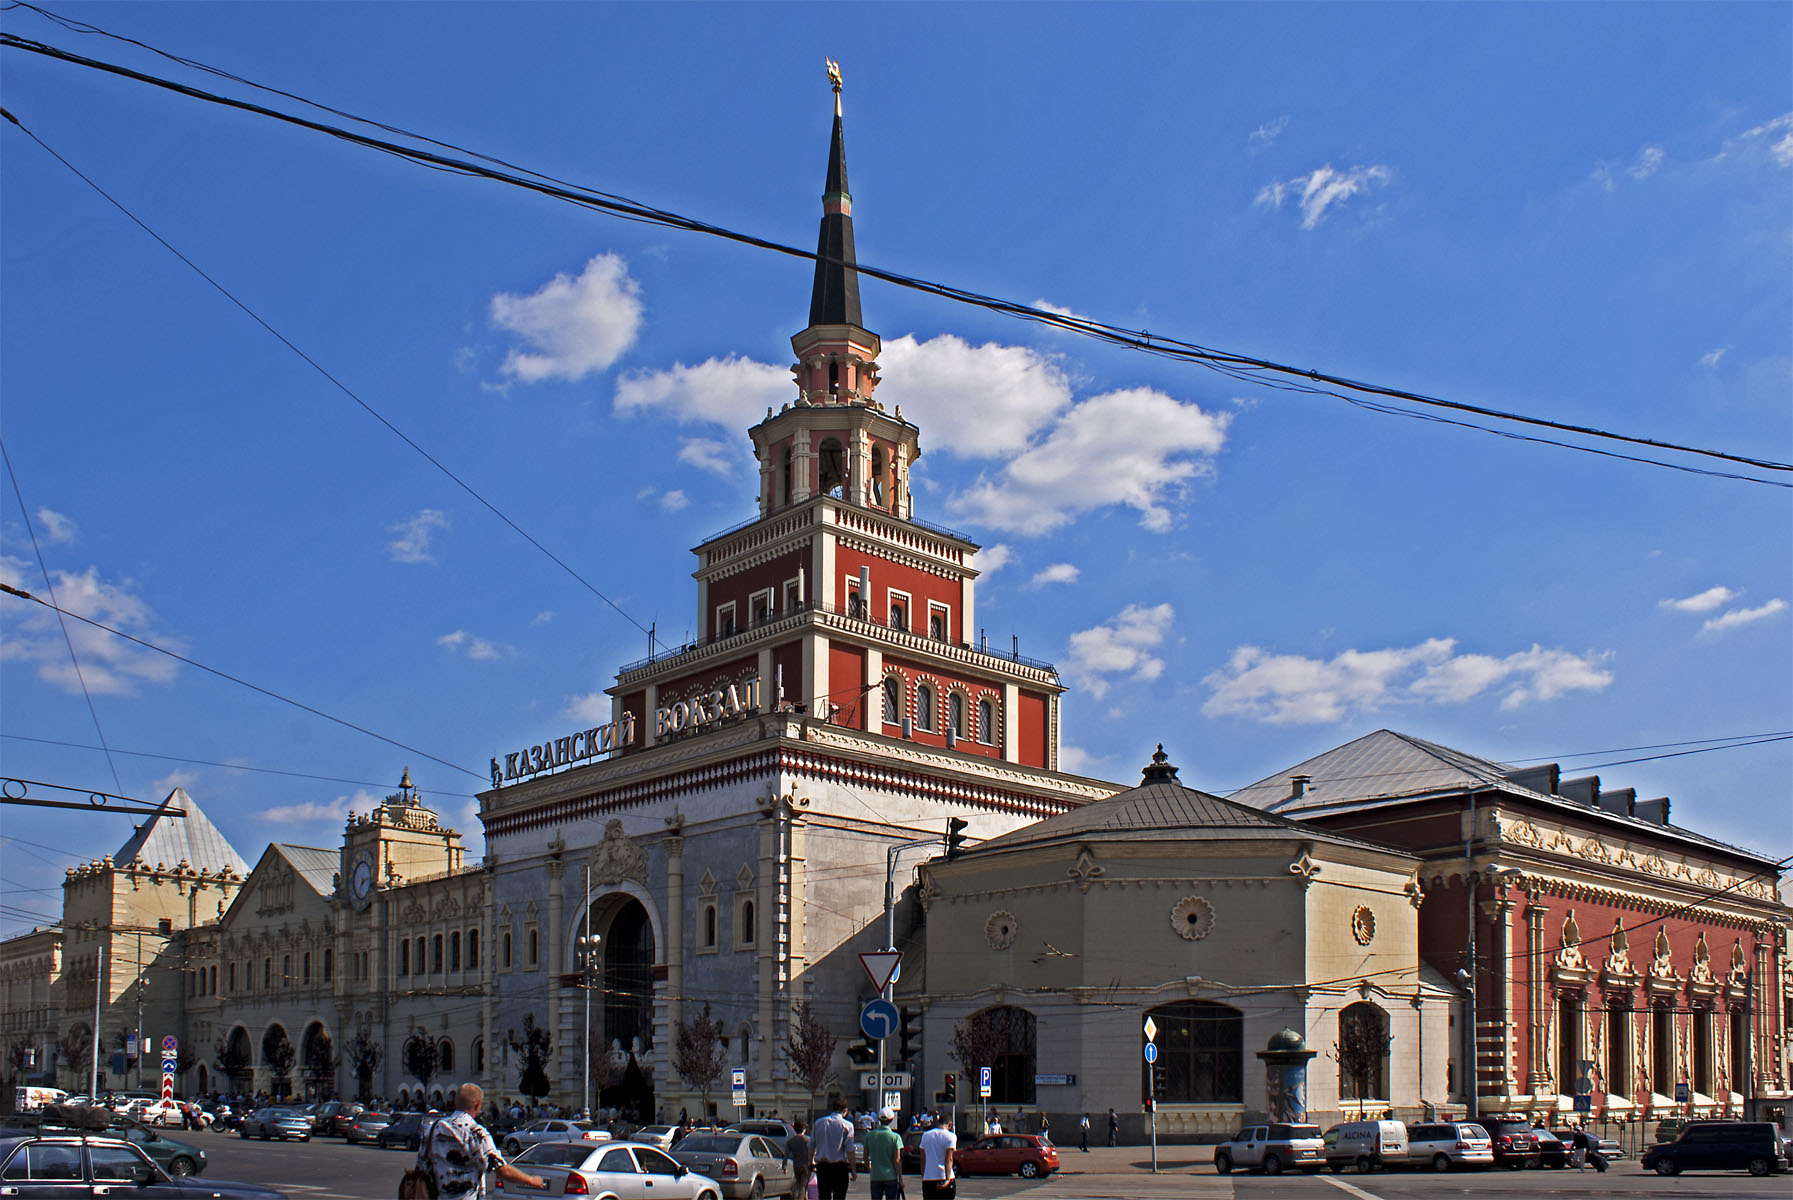 Здание Казанского вокзала